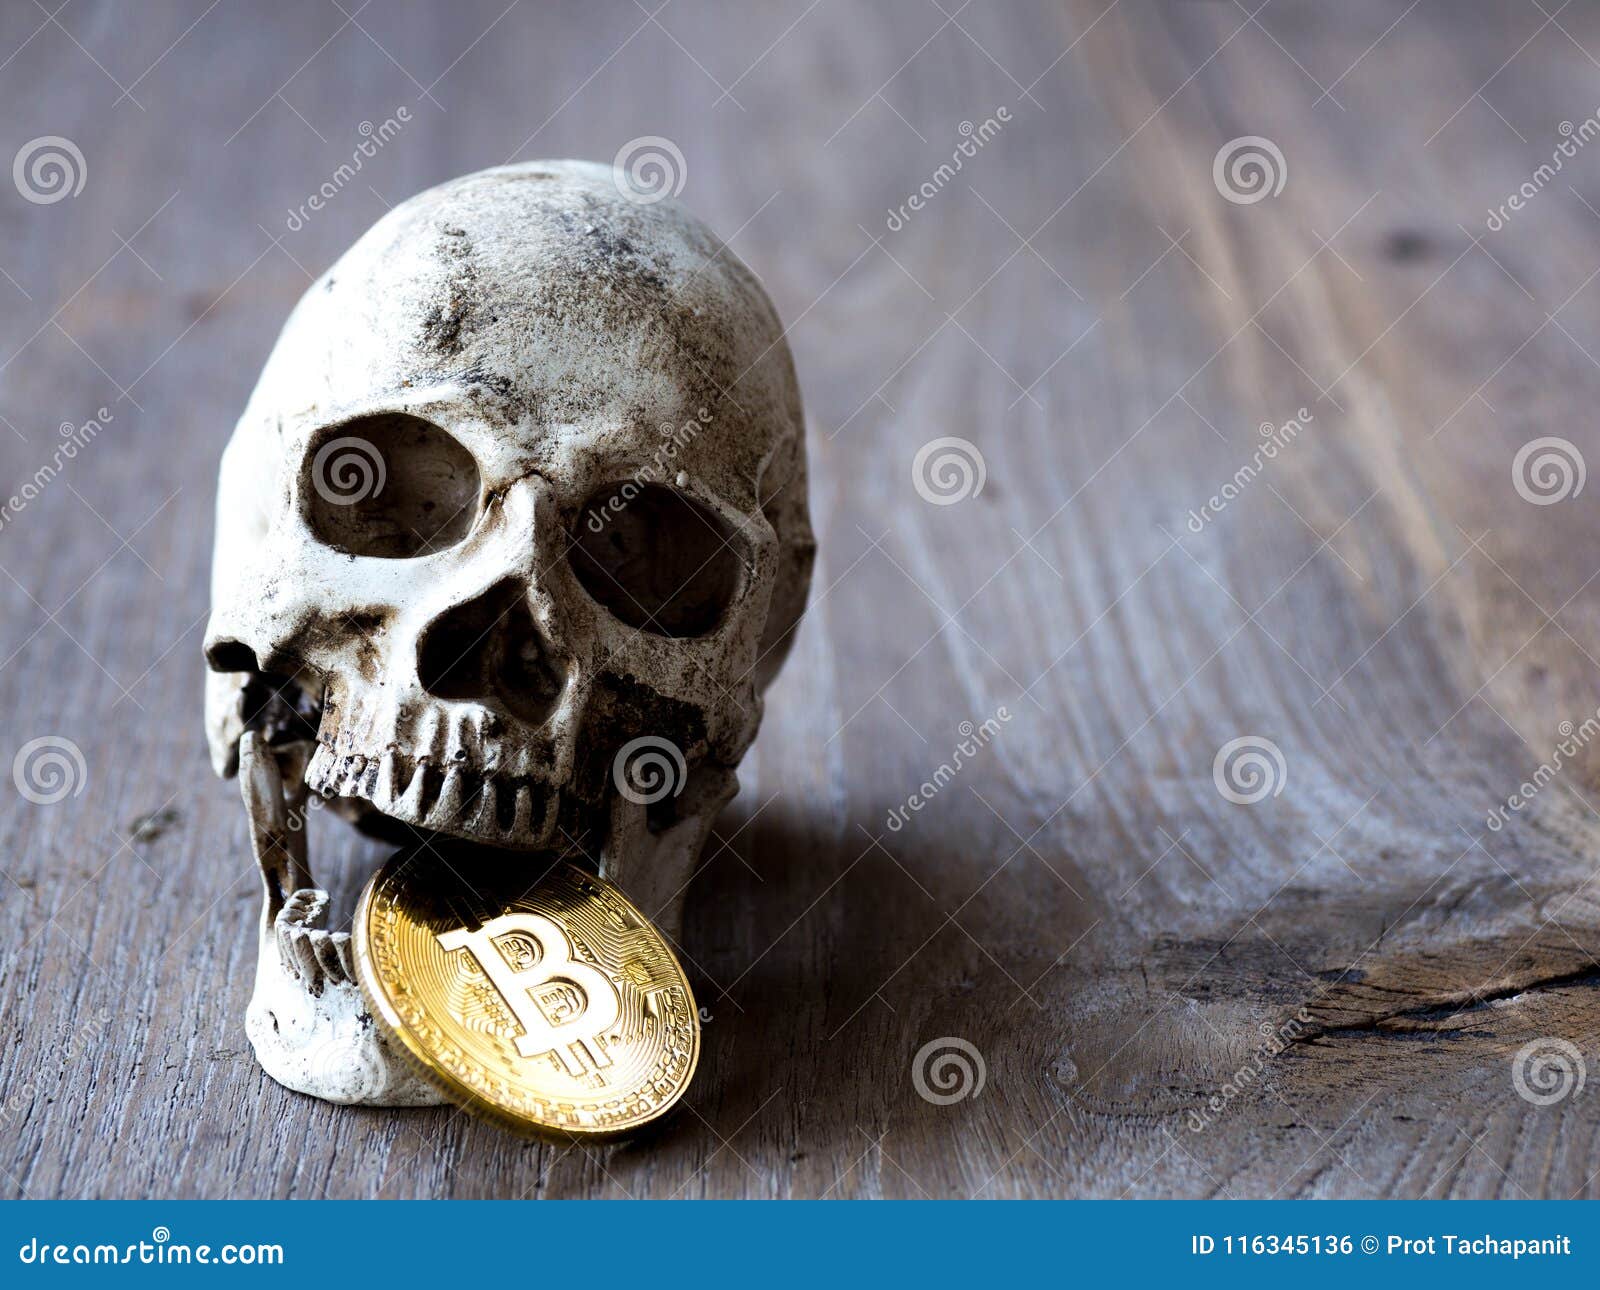 skull coin crypto